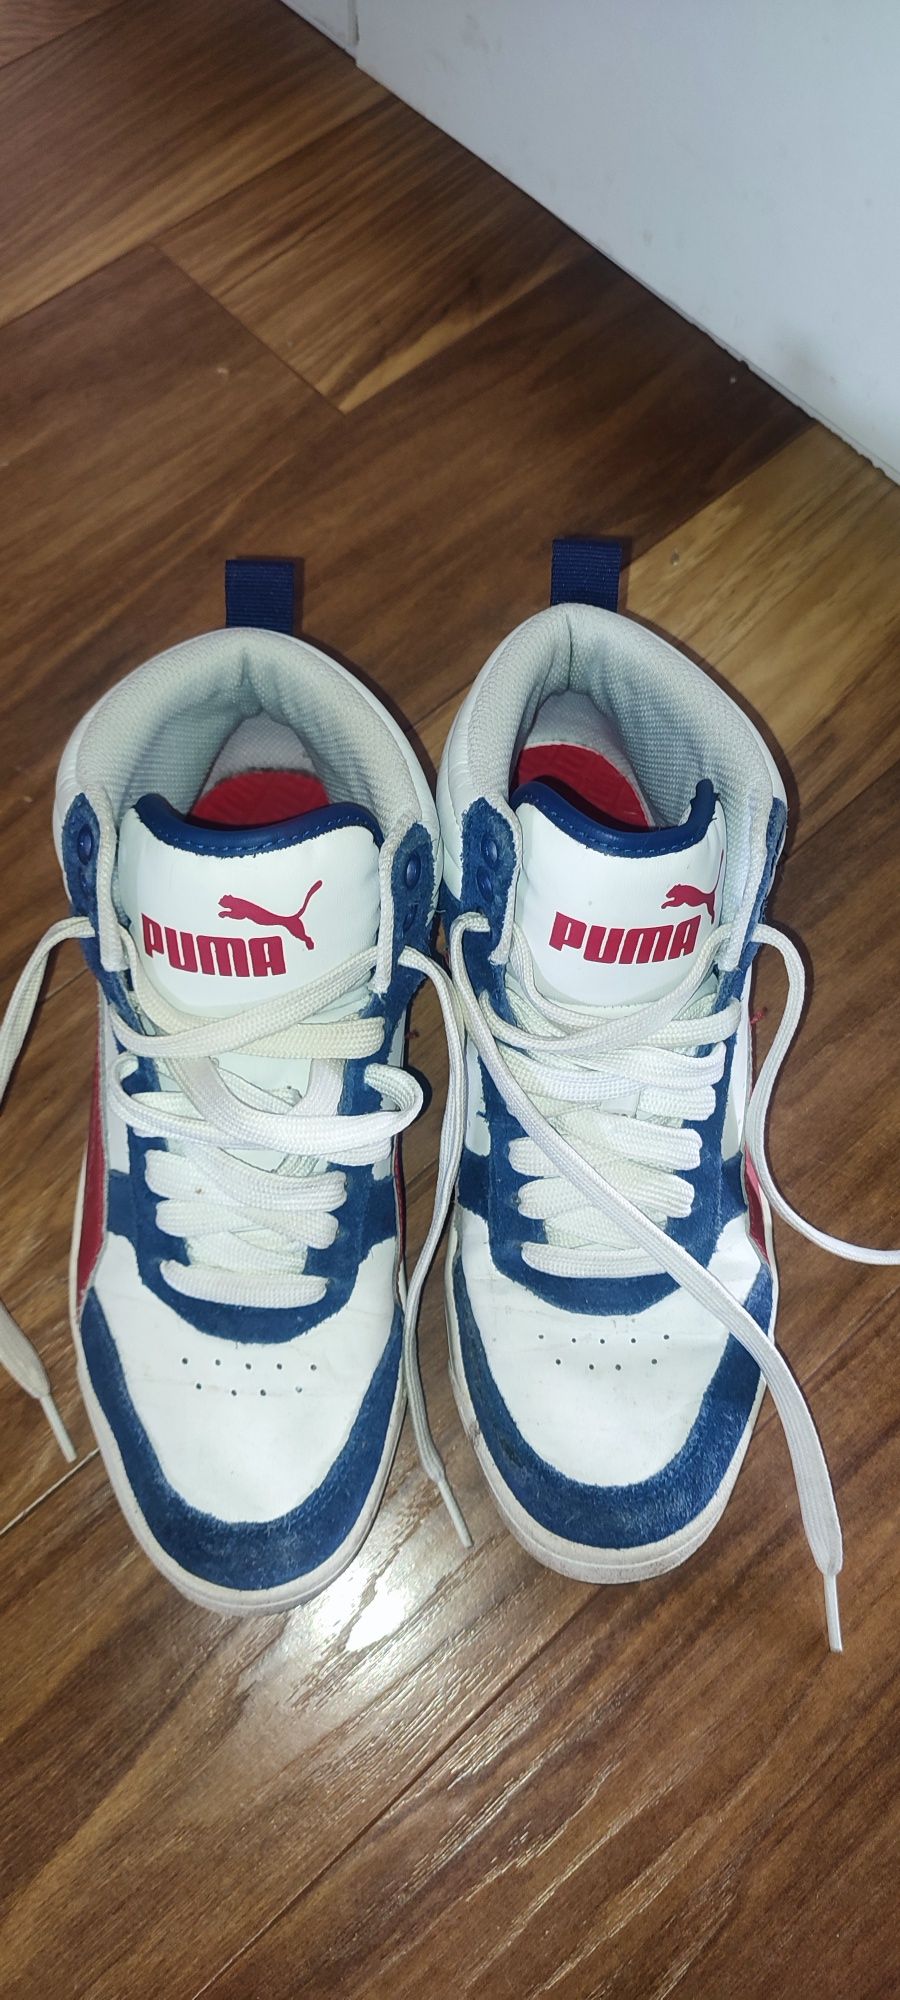 Oryginalne buty Puma rozm 38.5 wkładka  24.5 cm